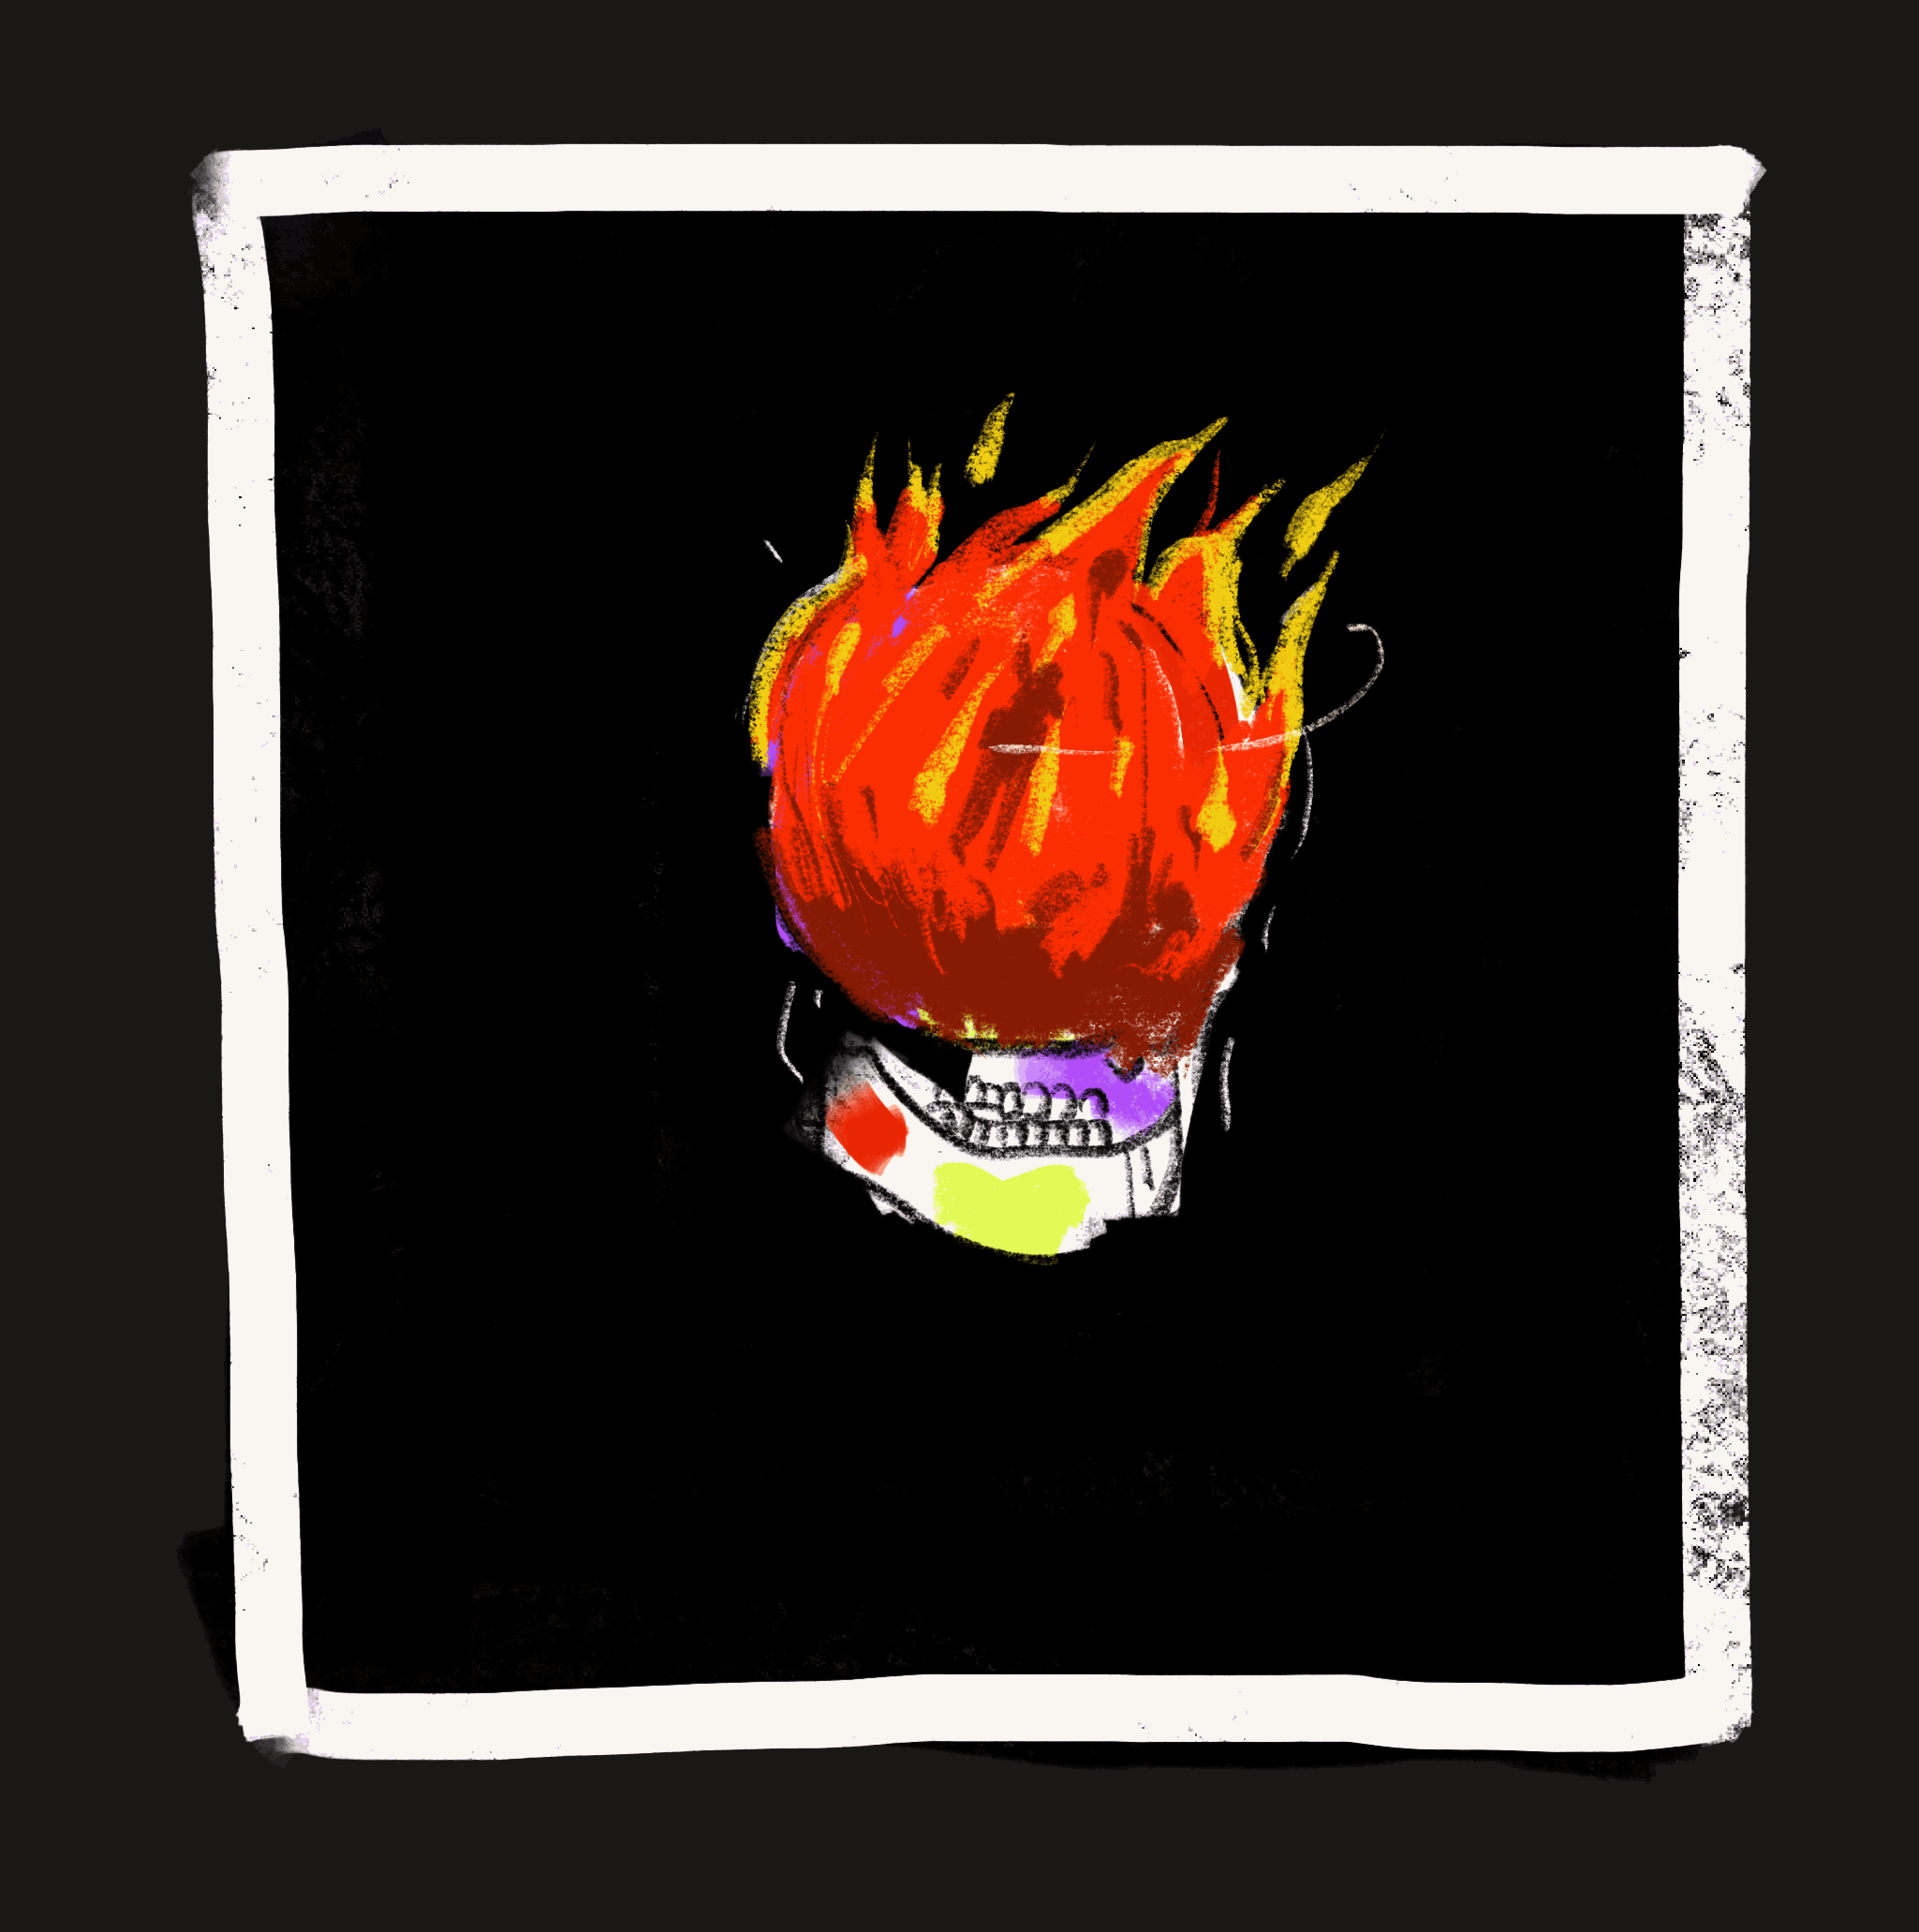 BONEYARD SKULL: FIRE